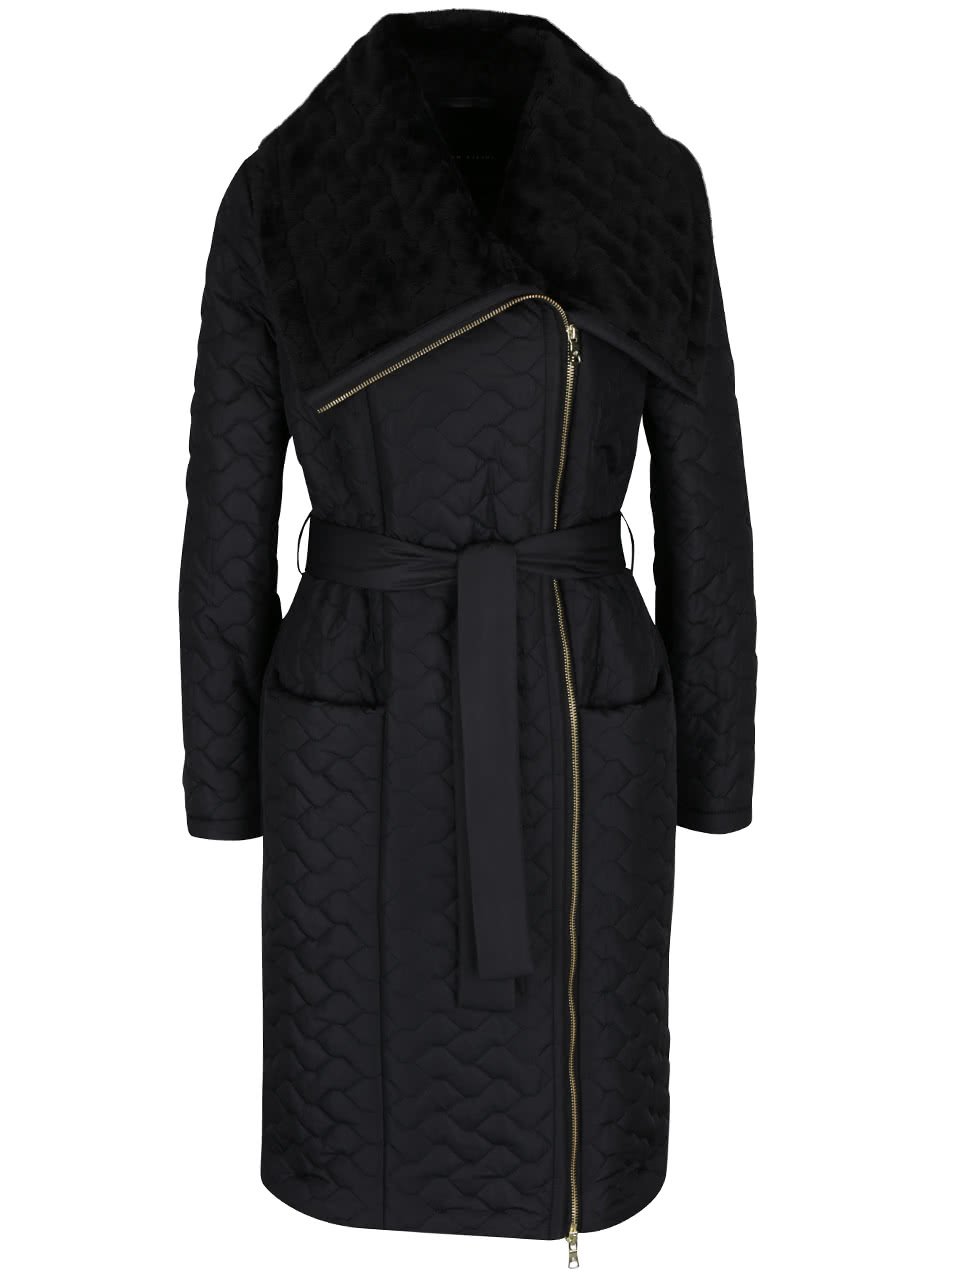 Černý dámský prošívaný kabát s umělou kožešinou a páskem Pietro Filipi